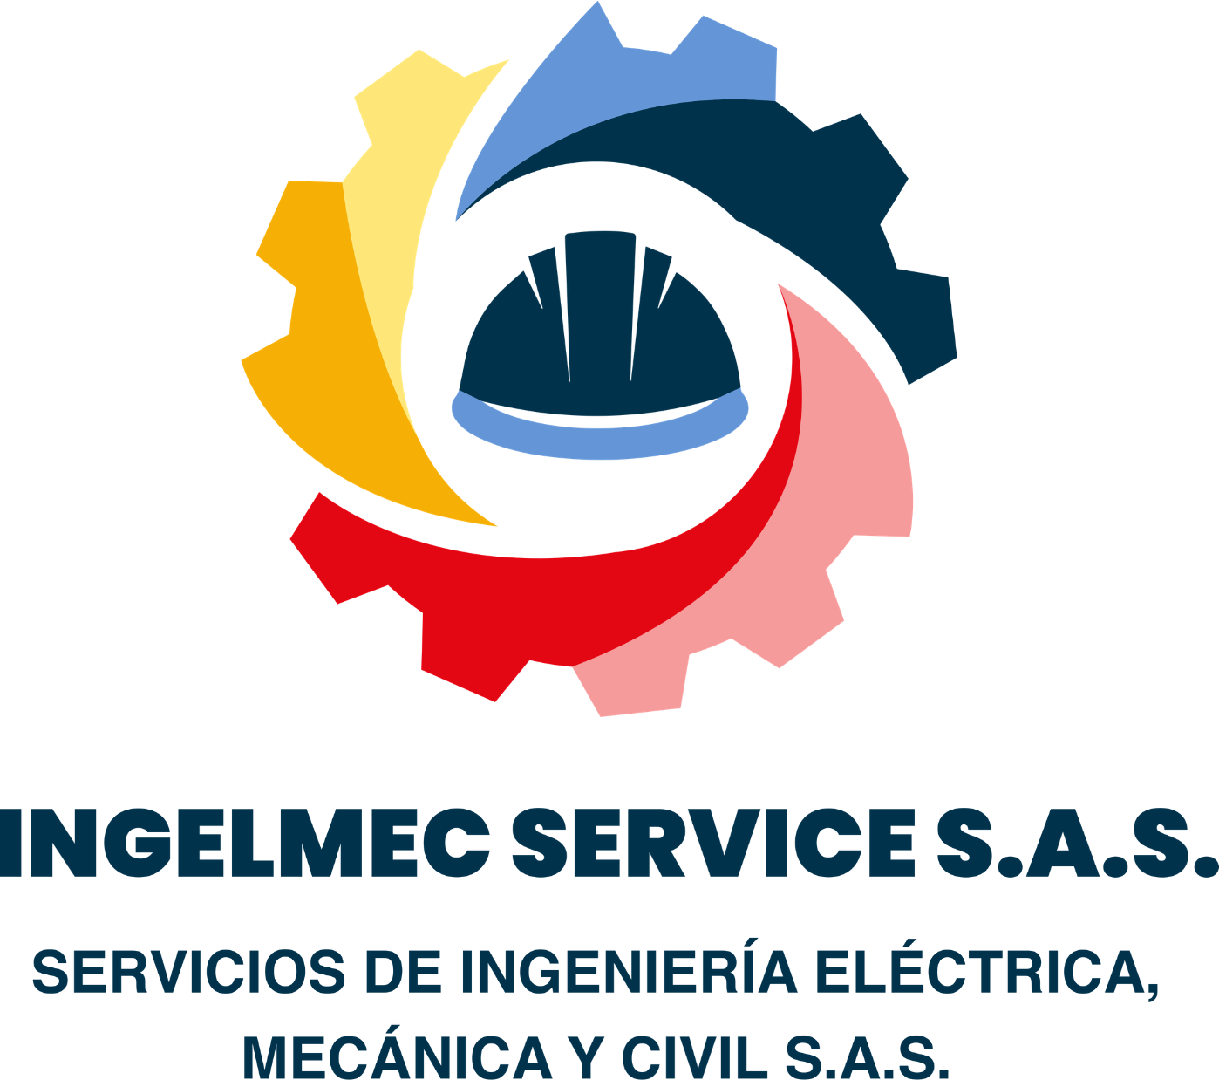 INGELMEC SERVICE S.A.S. Servicios de Ingeniería Eléctrica, Mecánica y Civil